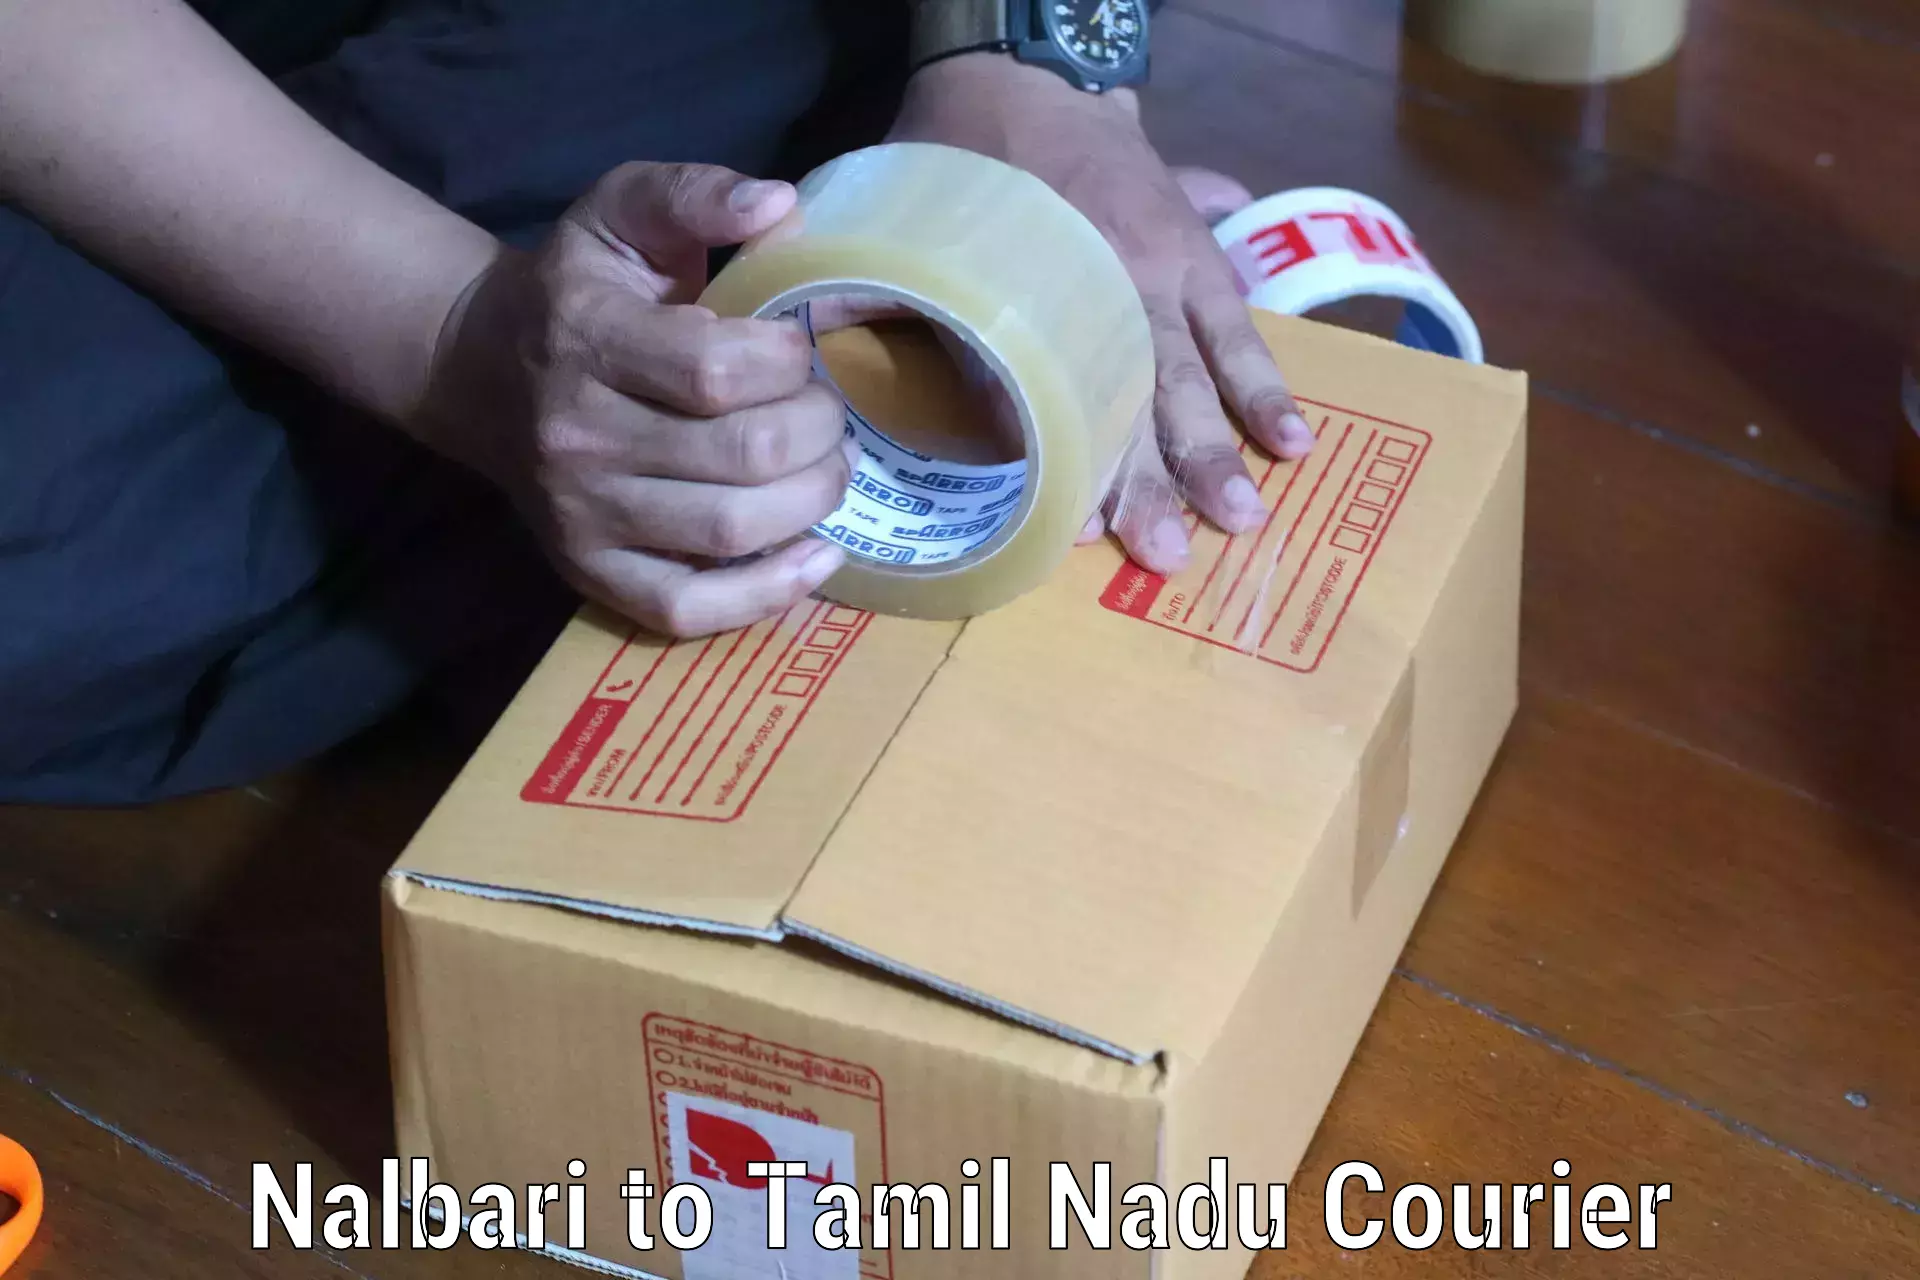 Versatile courier options Nalbari to Ulundurpet